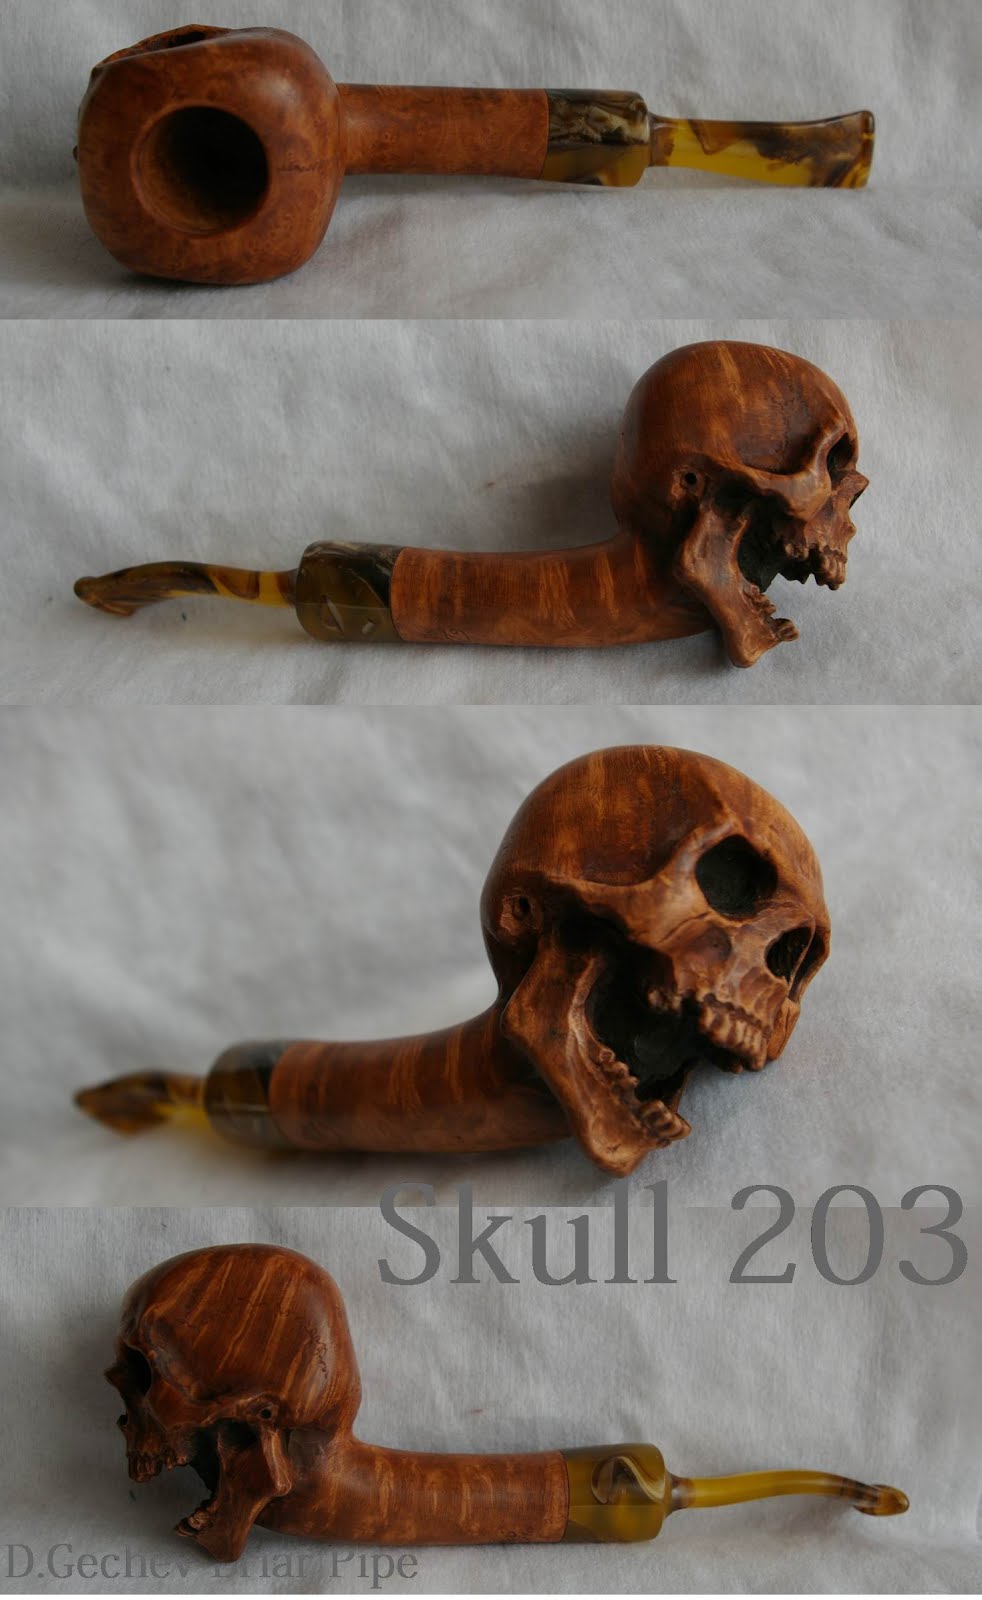 SOLD-Skull 203